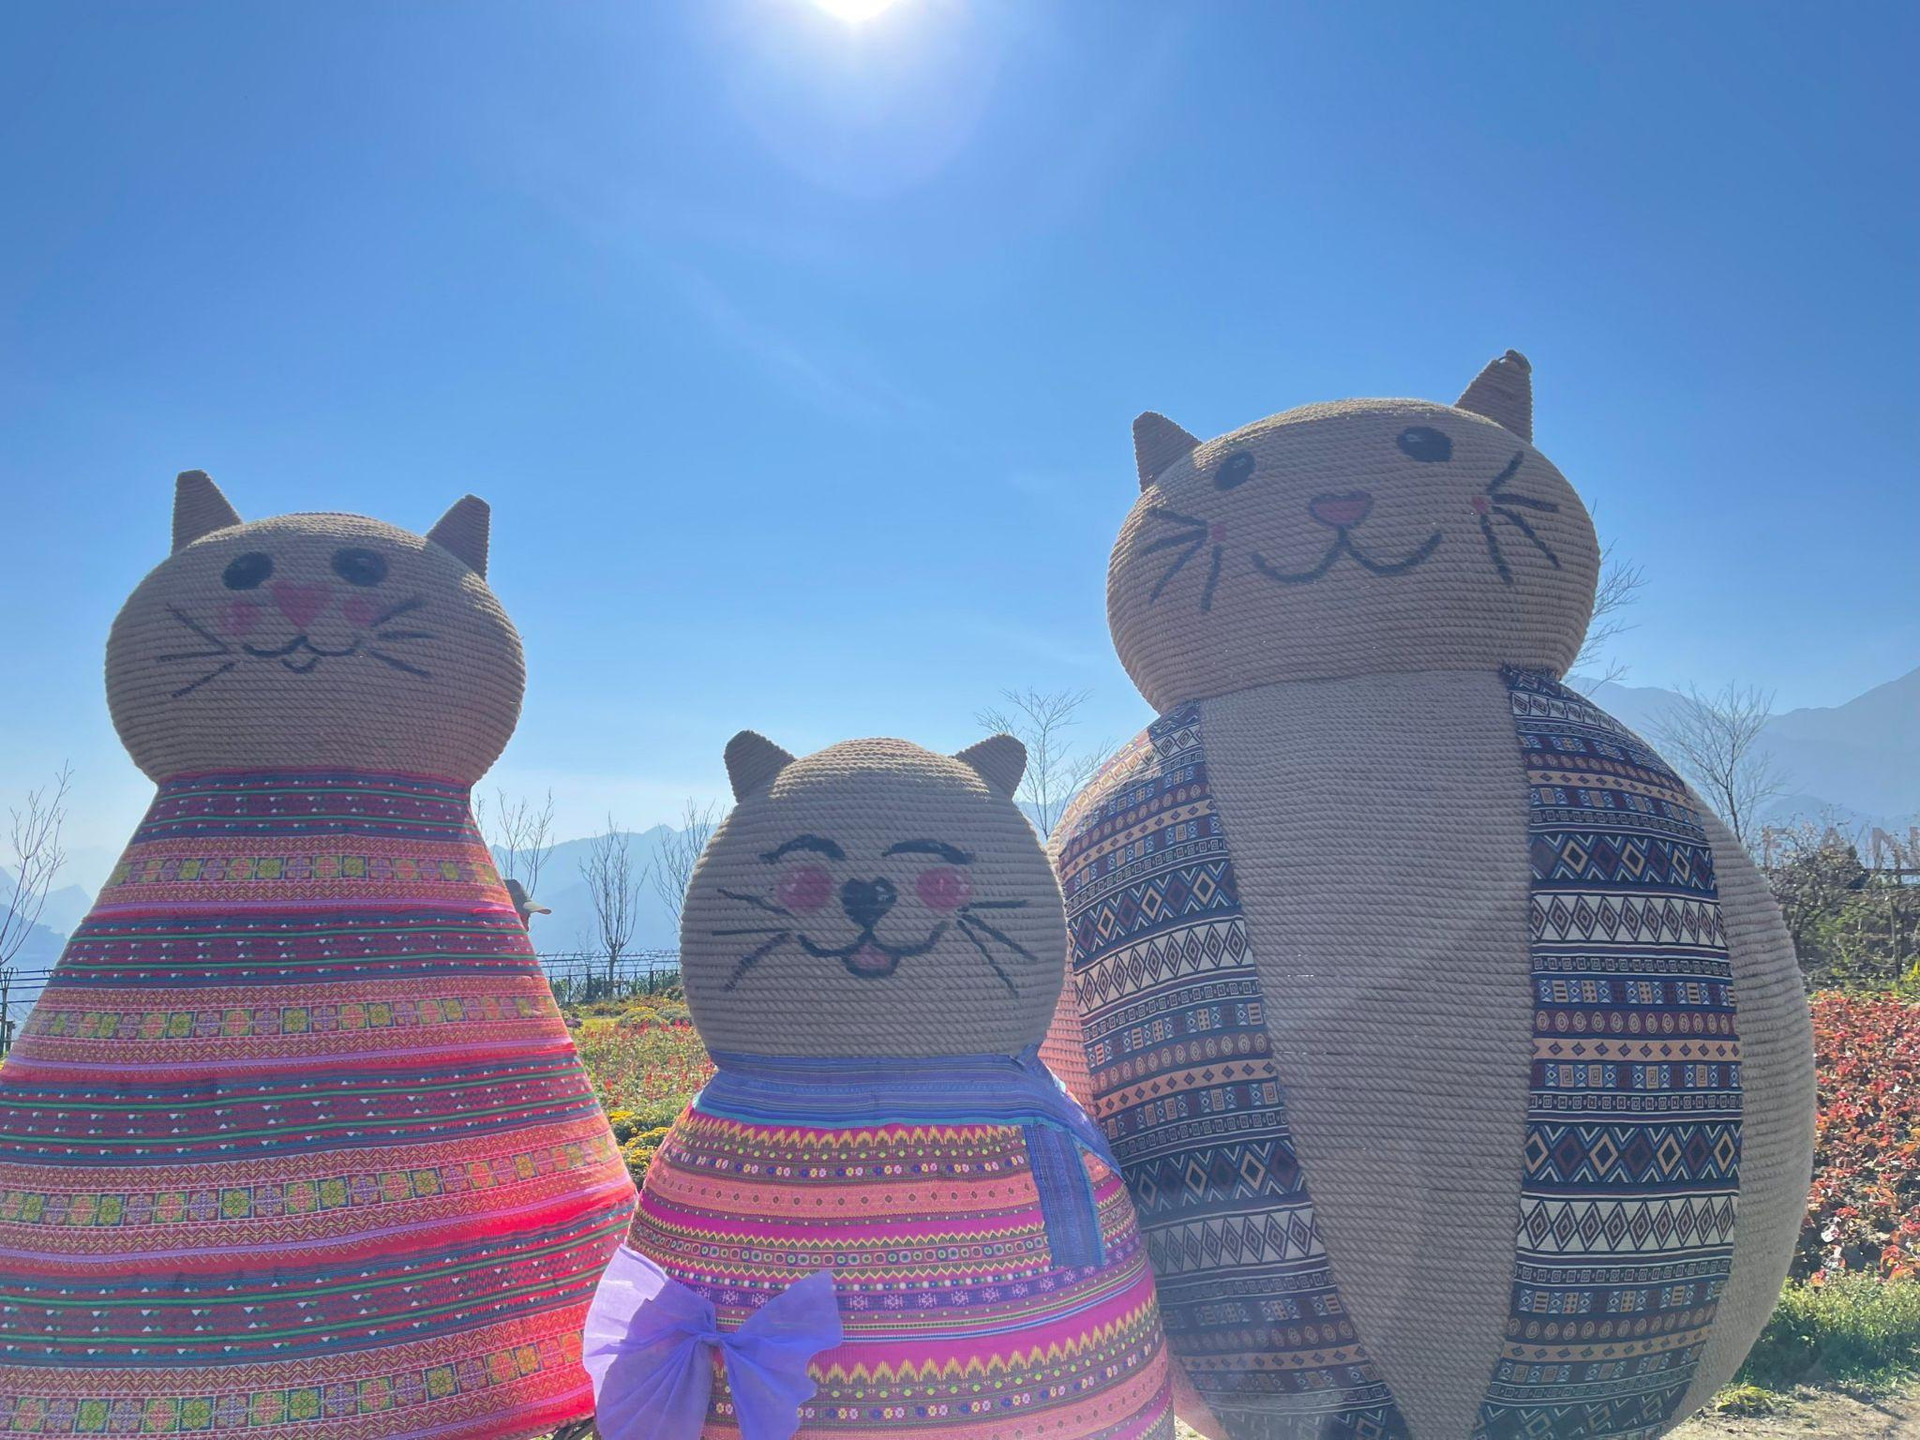 Tiểu cảnh gia đình mèo trong trang phục thổ cẩm của đồng bào dân tộc tại Sa Pa.